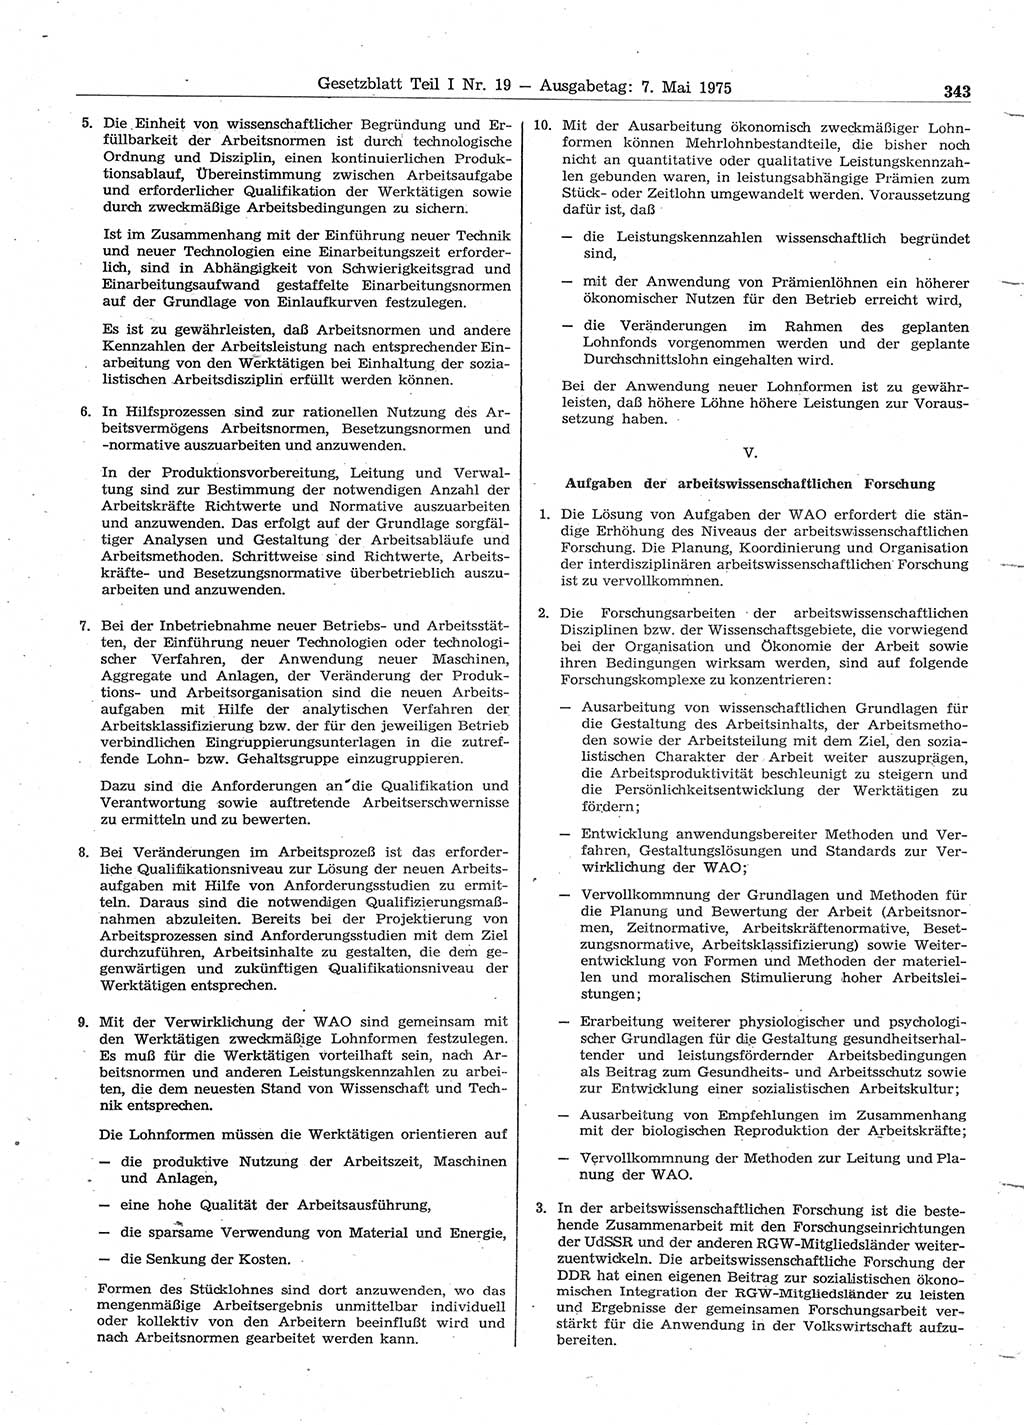 Gesetzblatt (GBl.) der Deutschen Demokratischen Republik (DDR) Teil Ⅰ 1975, Seite 343 (GBl. DDR Ⅰ 1975, S. 343)